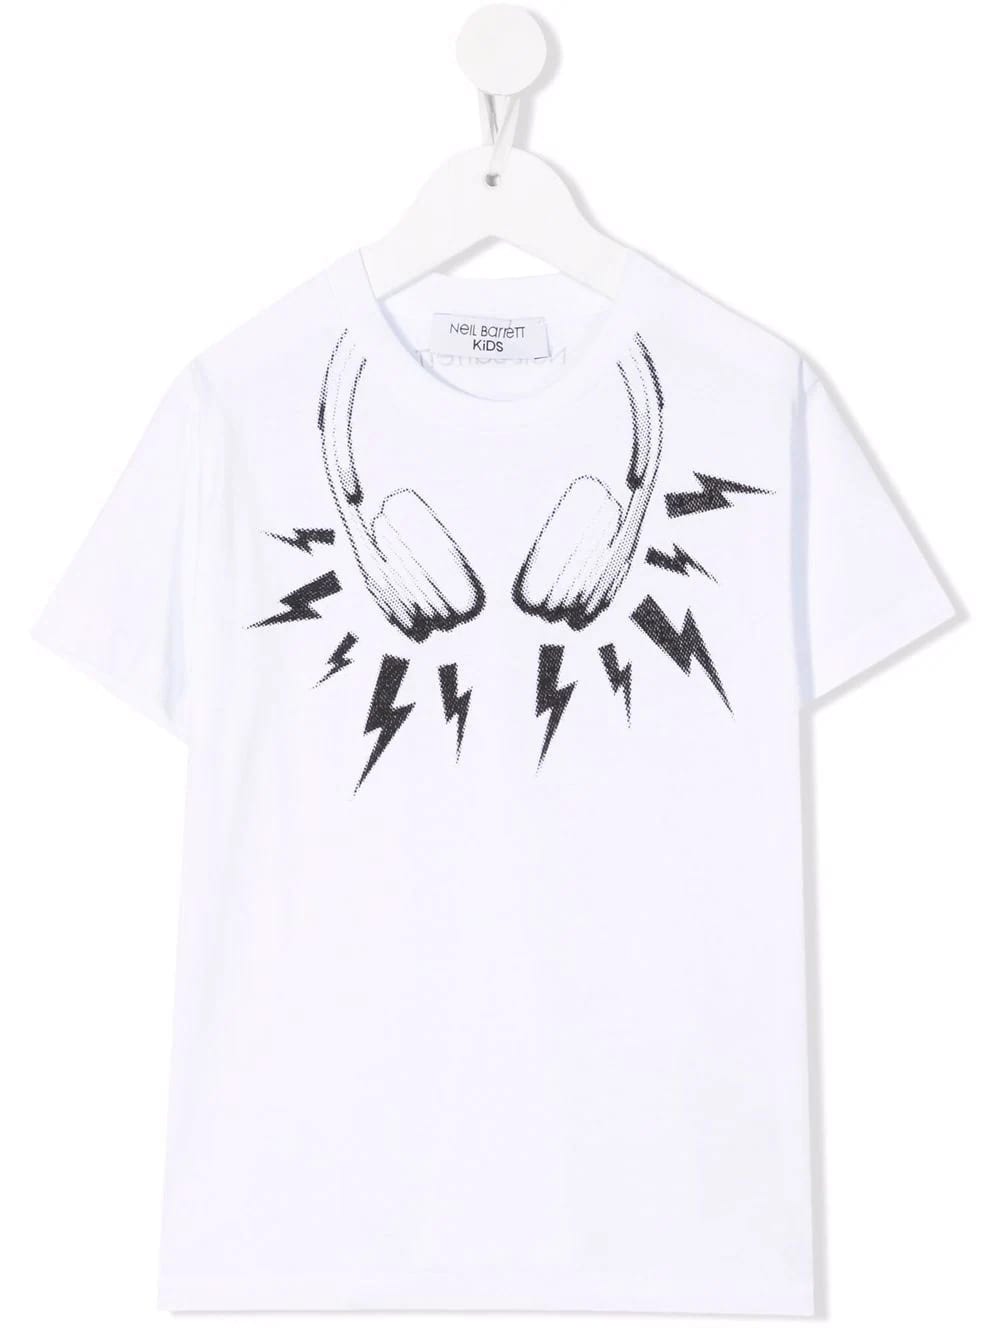 Neil Barrett Kids White T-shirt With Thunderbolt Headphones Print